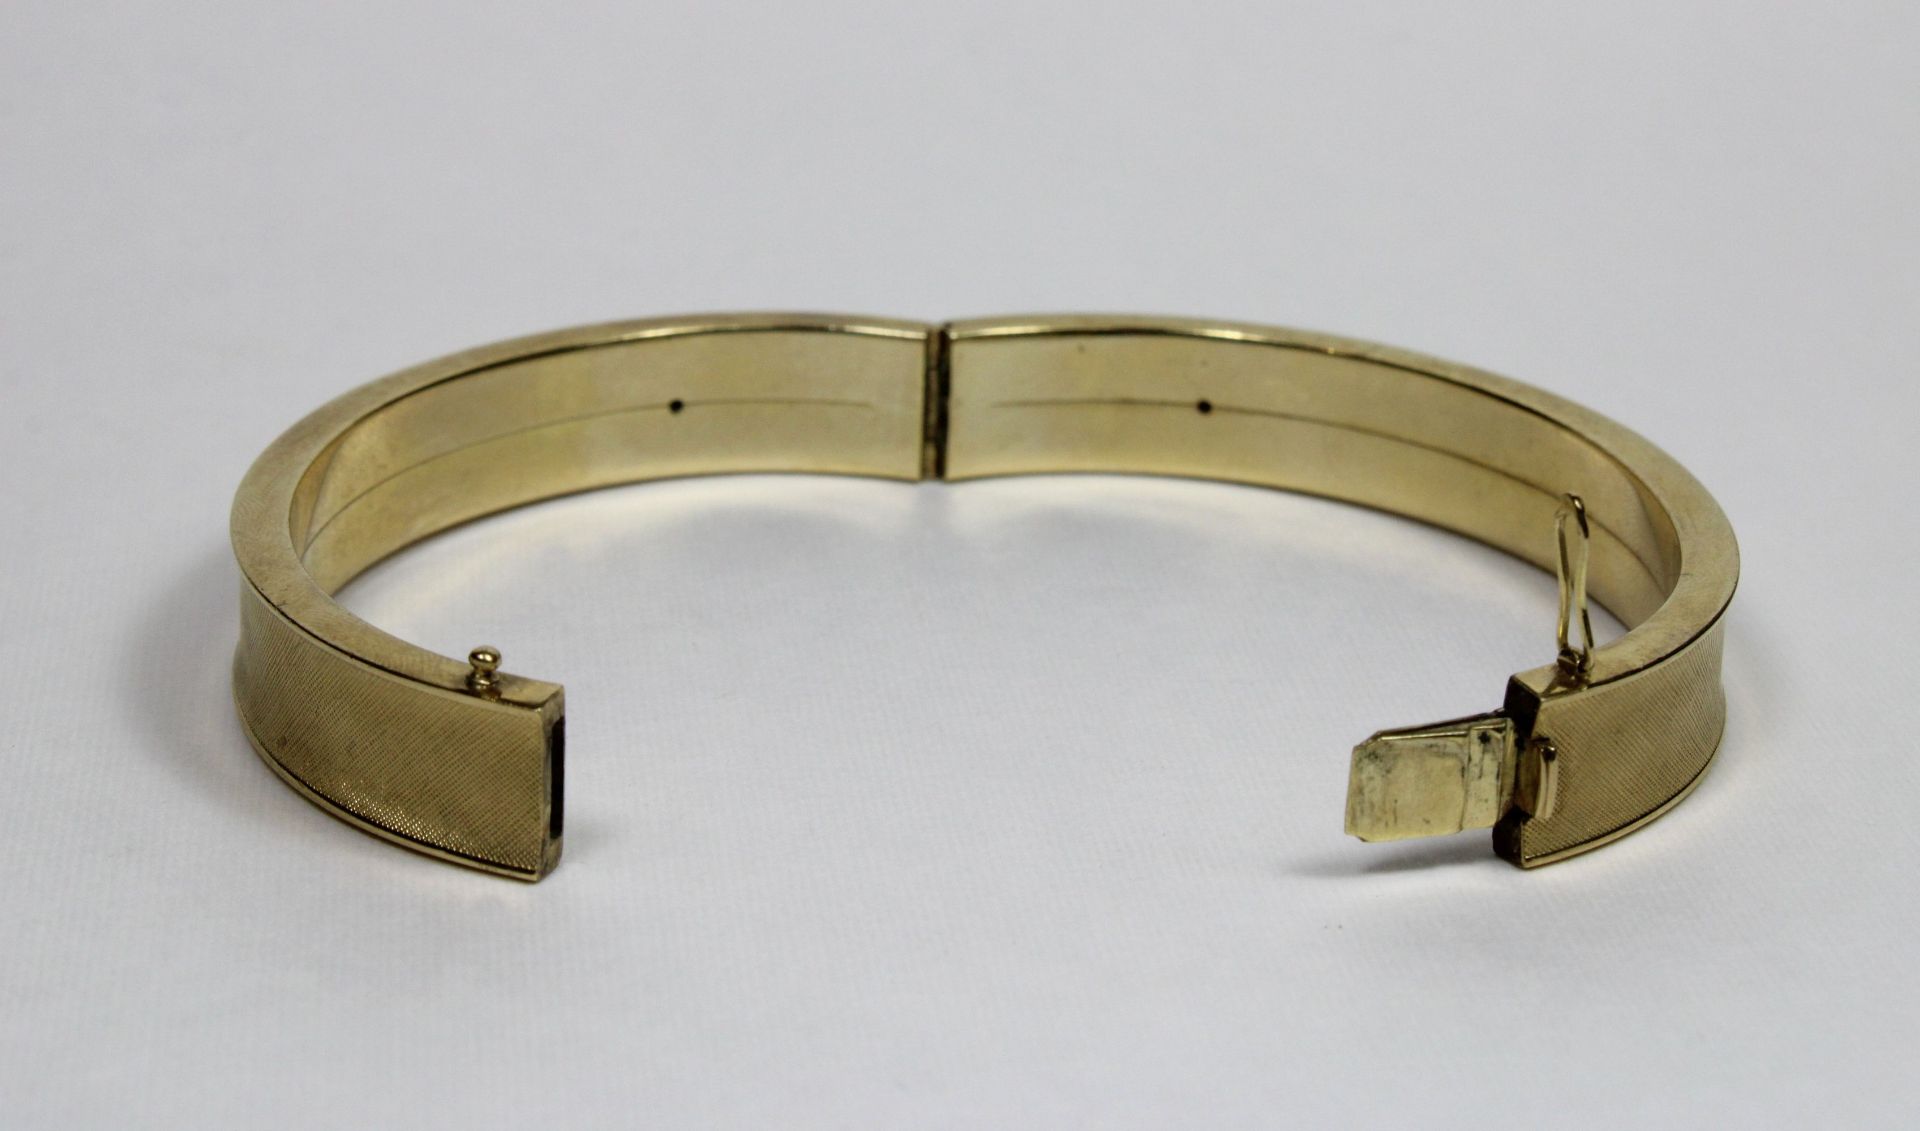 Armband, 333er Gold, Dm.: ca. 6 cm, Gesamtgewicht: 22 g. Guter, altersbedingter Zustand. - Bild 2 aus 3